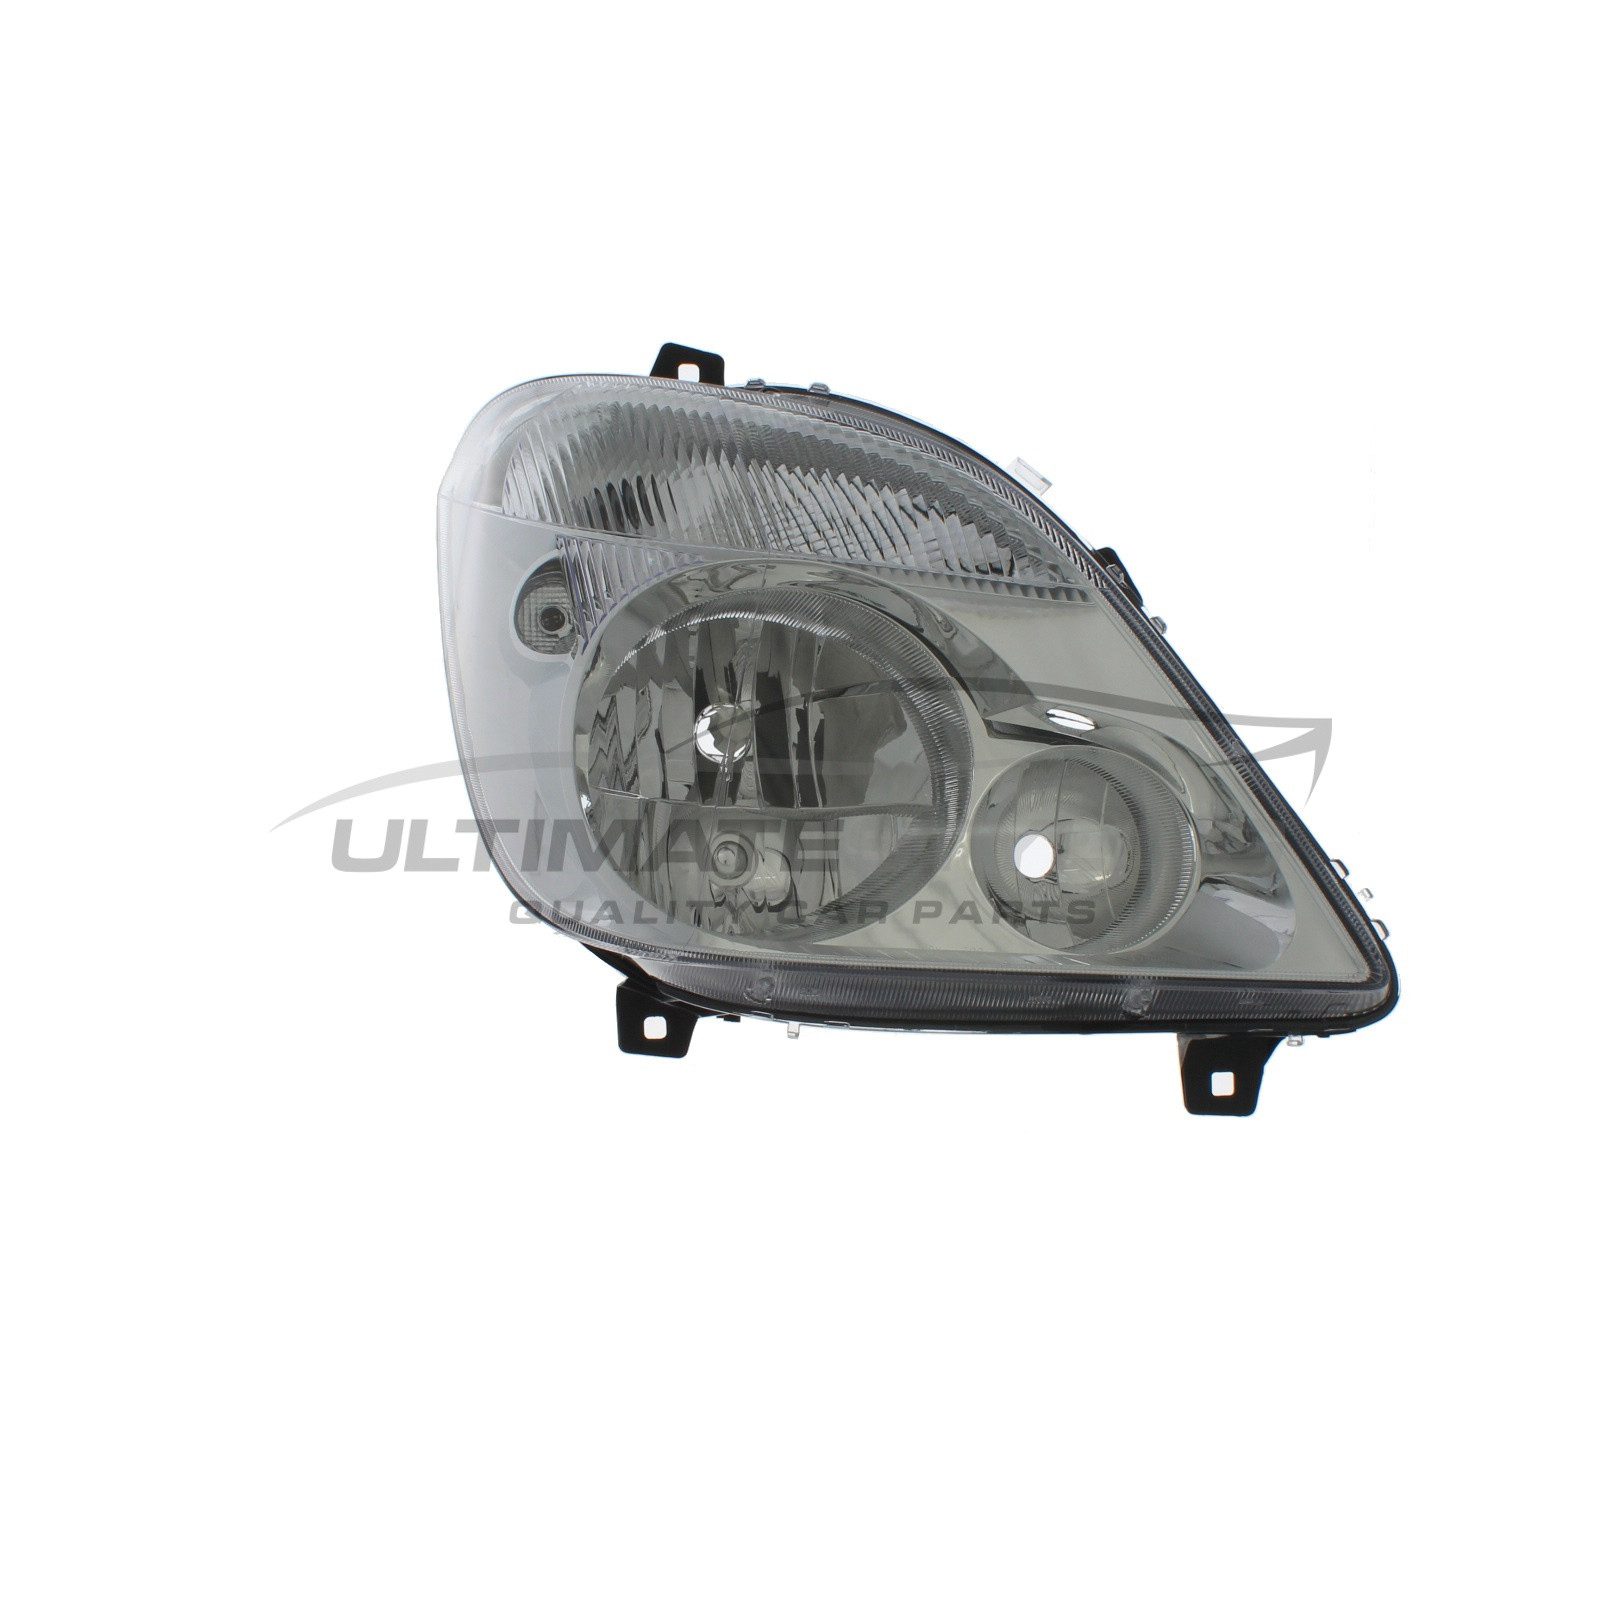 Headlight / Headlamp for Mercedes Benz Sprinter